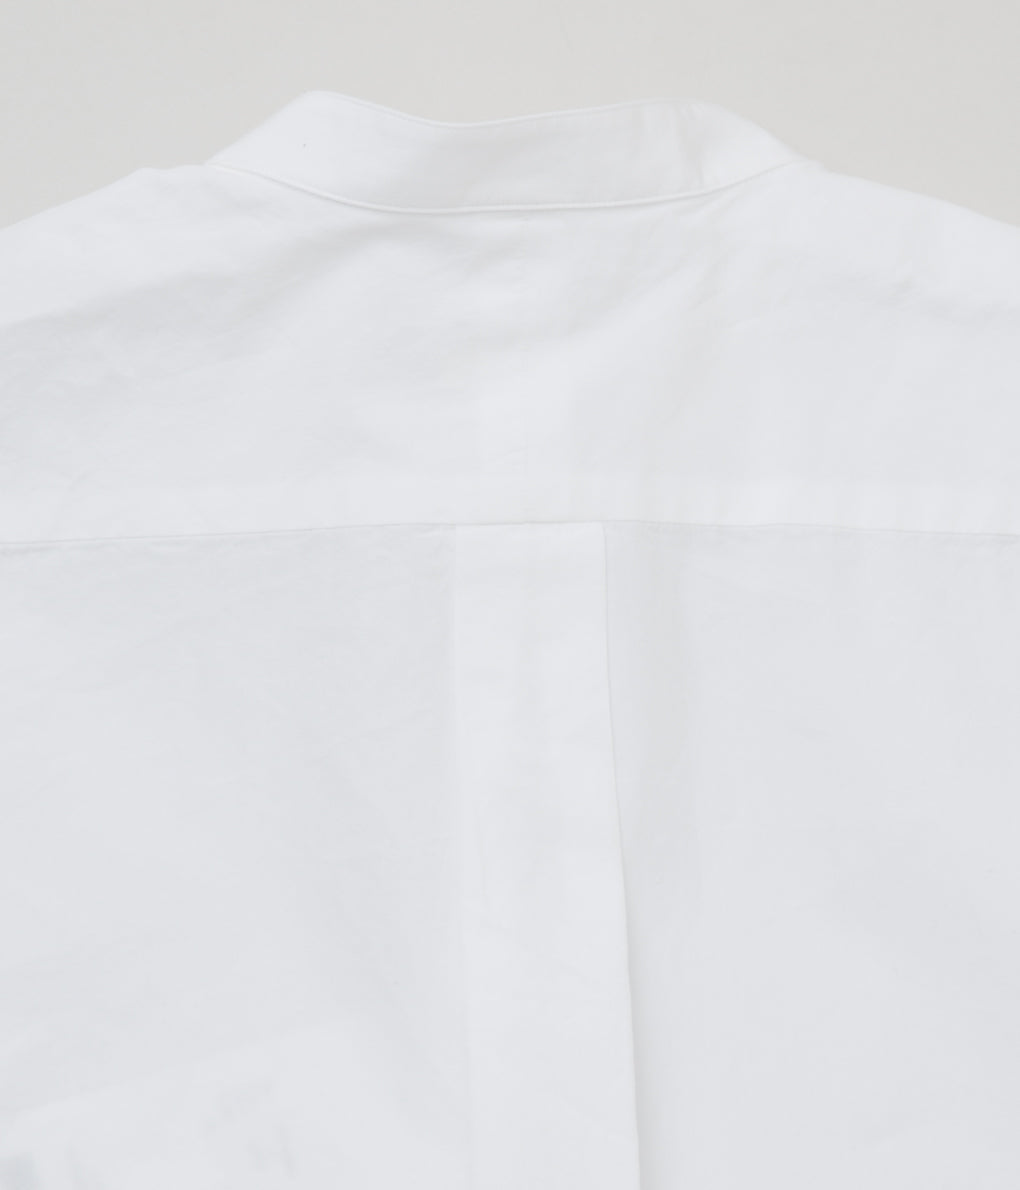 COMOLI "밴드 컬러 셔츠"(WHITE)